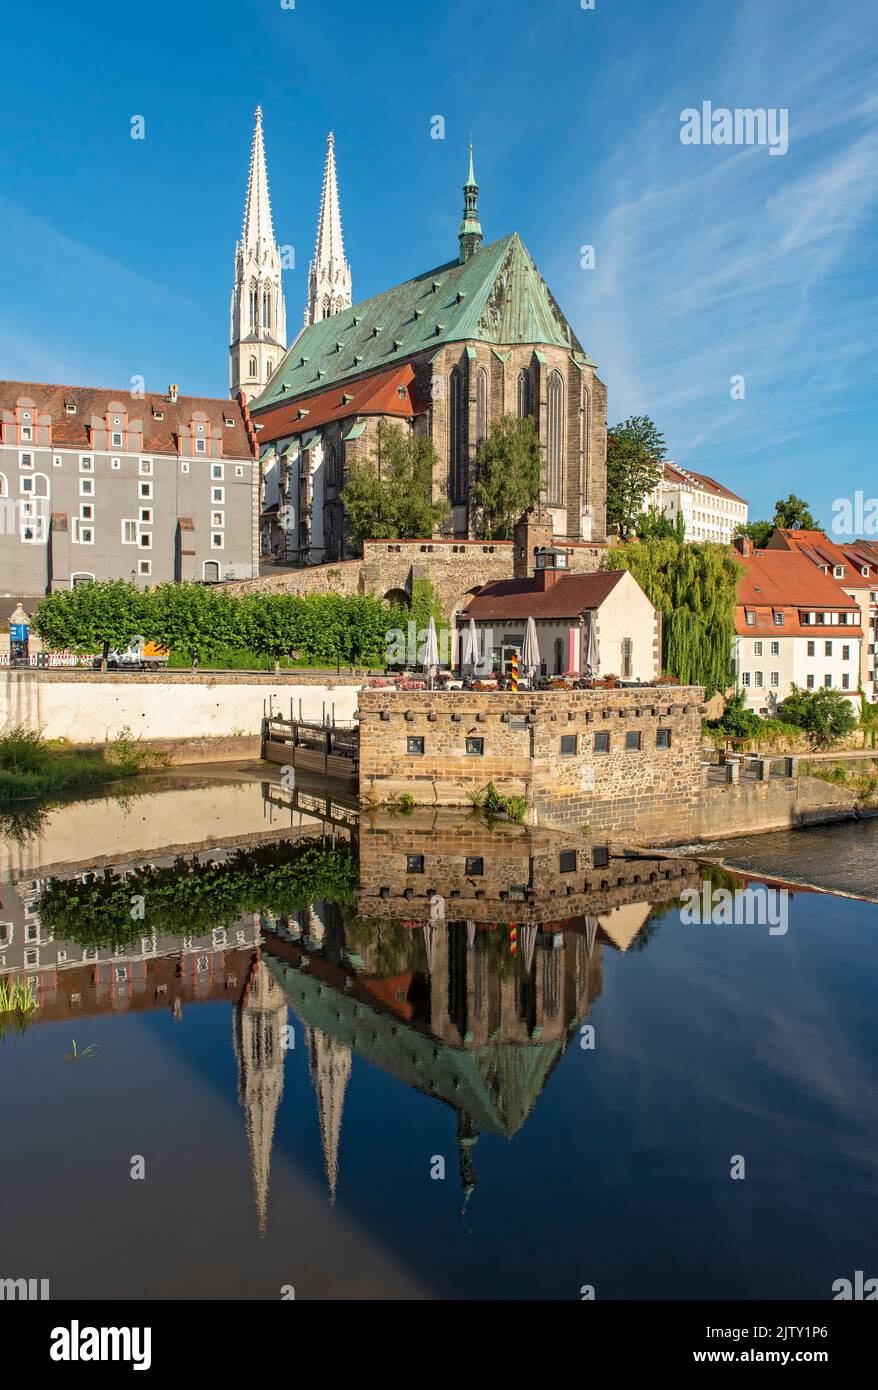 Église Saint-Pierre-et-Paul (Peterskirche), Maison de la Woad (Waidhaus) et rivière Lusatien Neisse, Görlitz (Goerlitz), Allemagne Banque D'Images